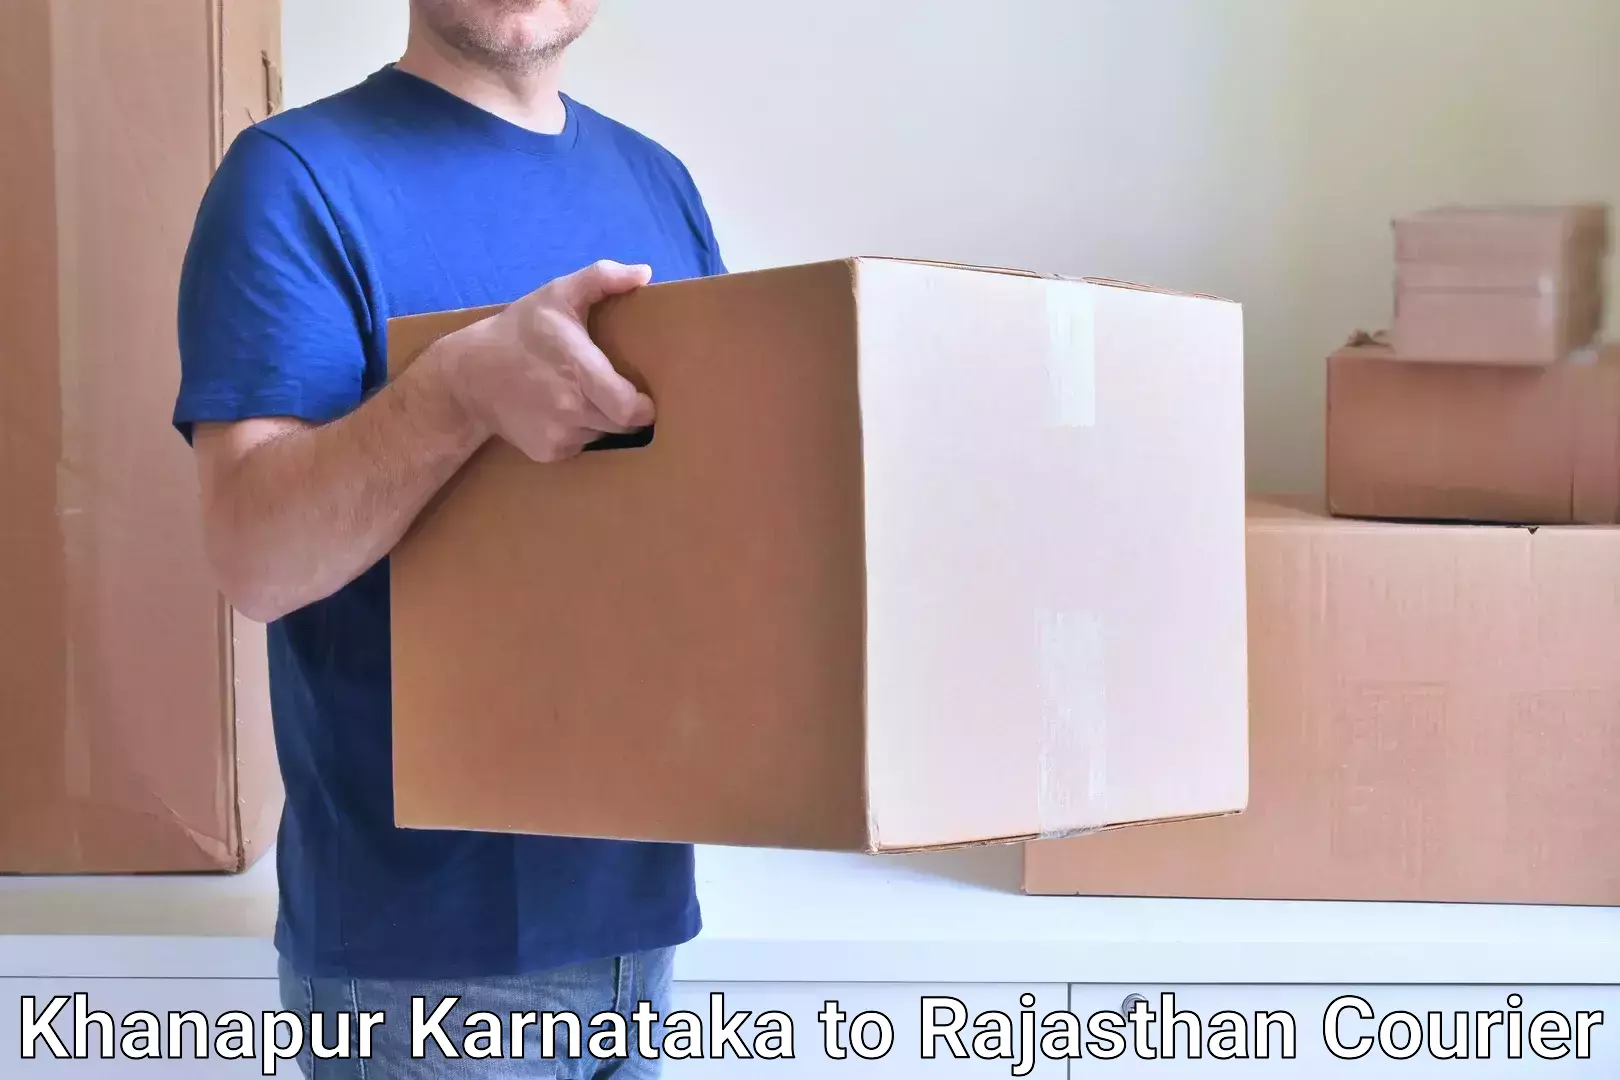 Express courier facilities Khanapur Karnataka to Rajasthan